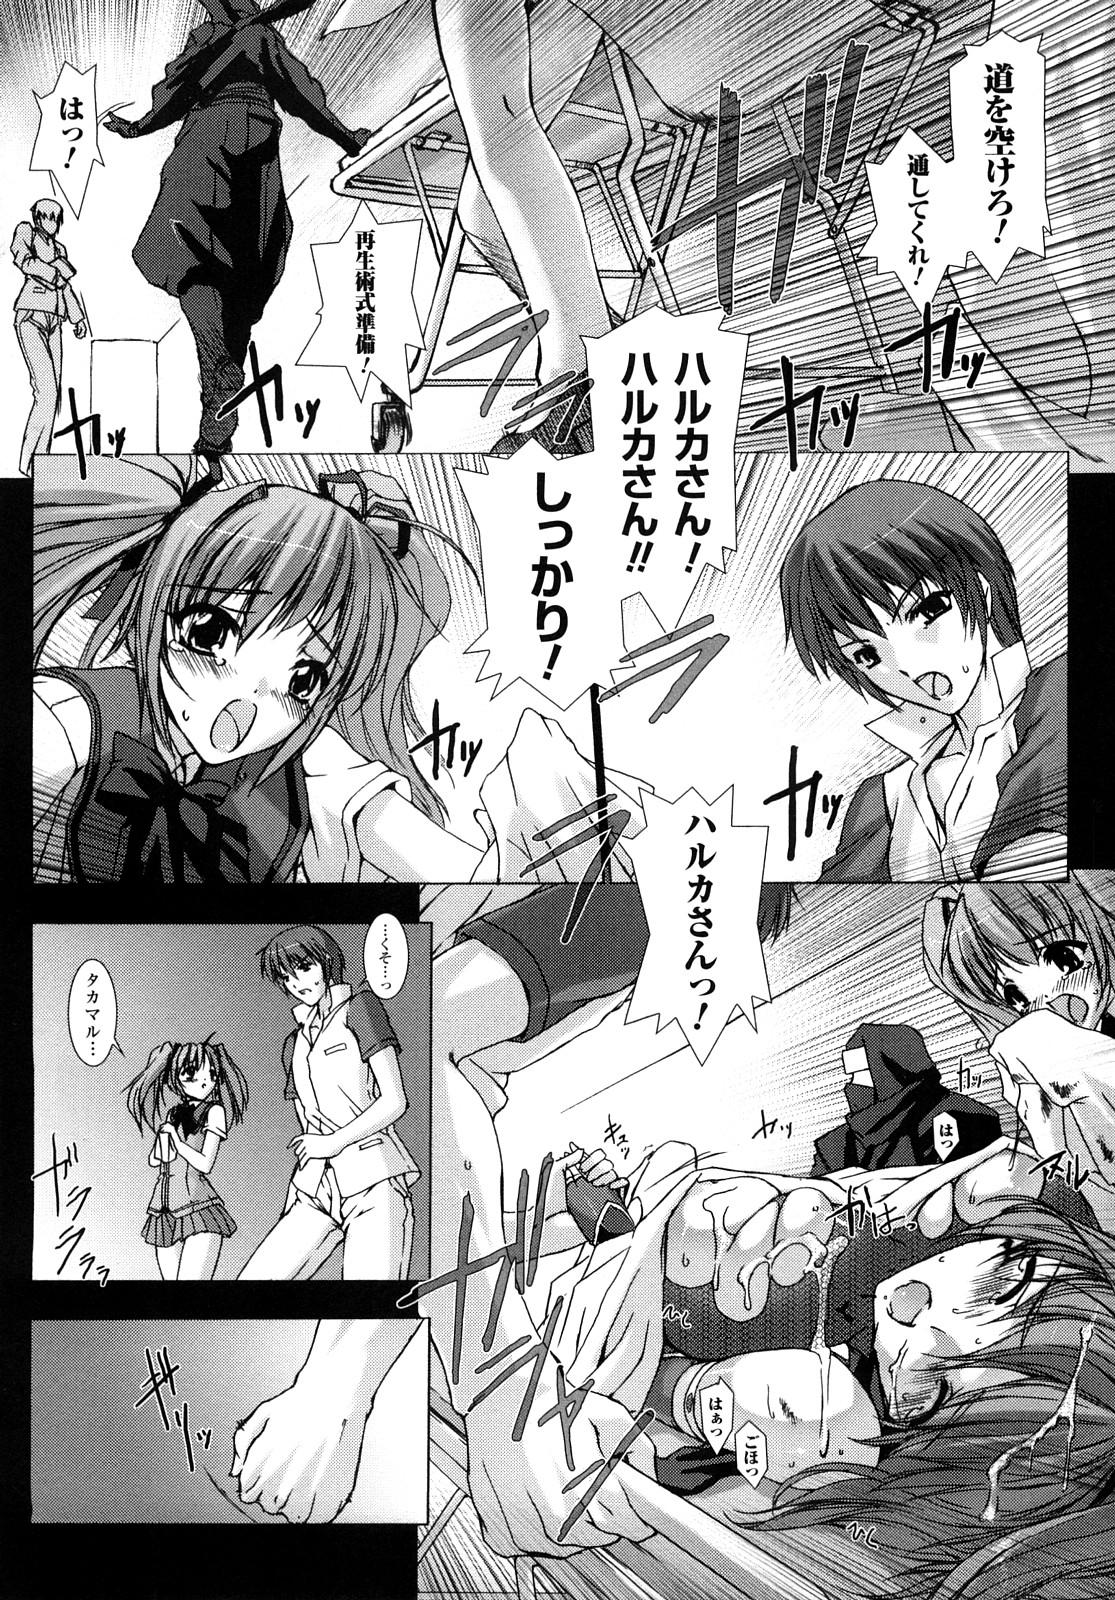 Double Choukousennin Haruka: Yaiba no Maki - Beat blades haruka Gay Cut - Page 10